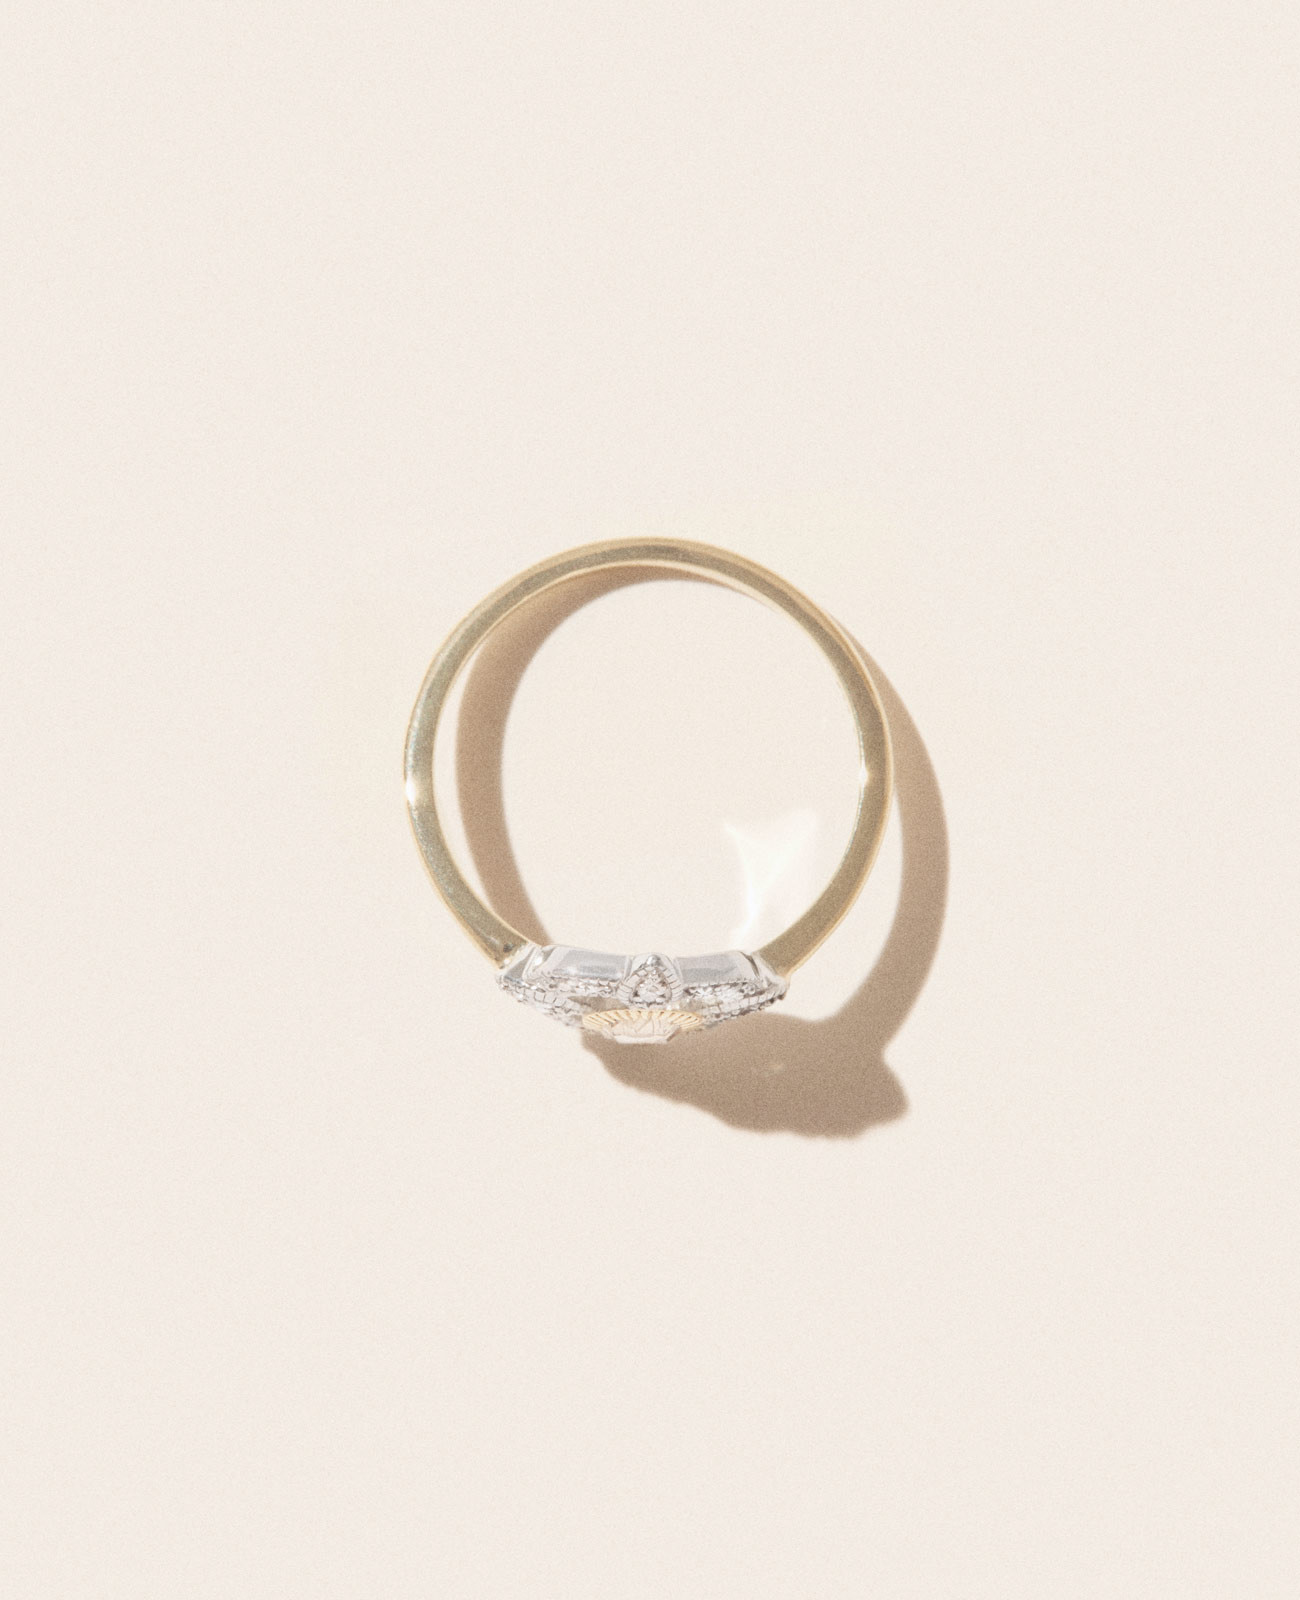 BETTINA DIAMOND ring pascale monvoisin jewelry paris